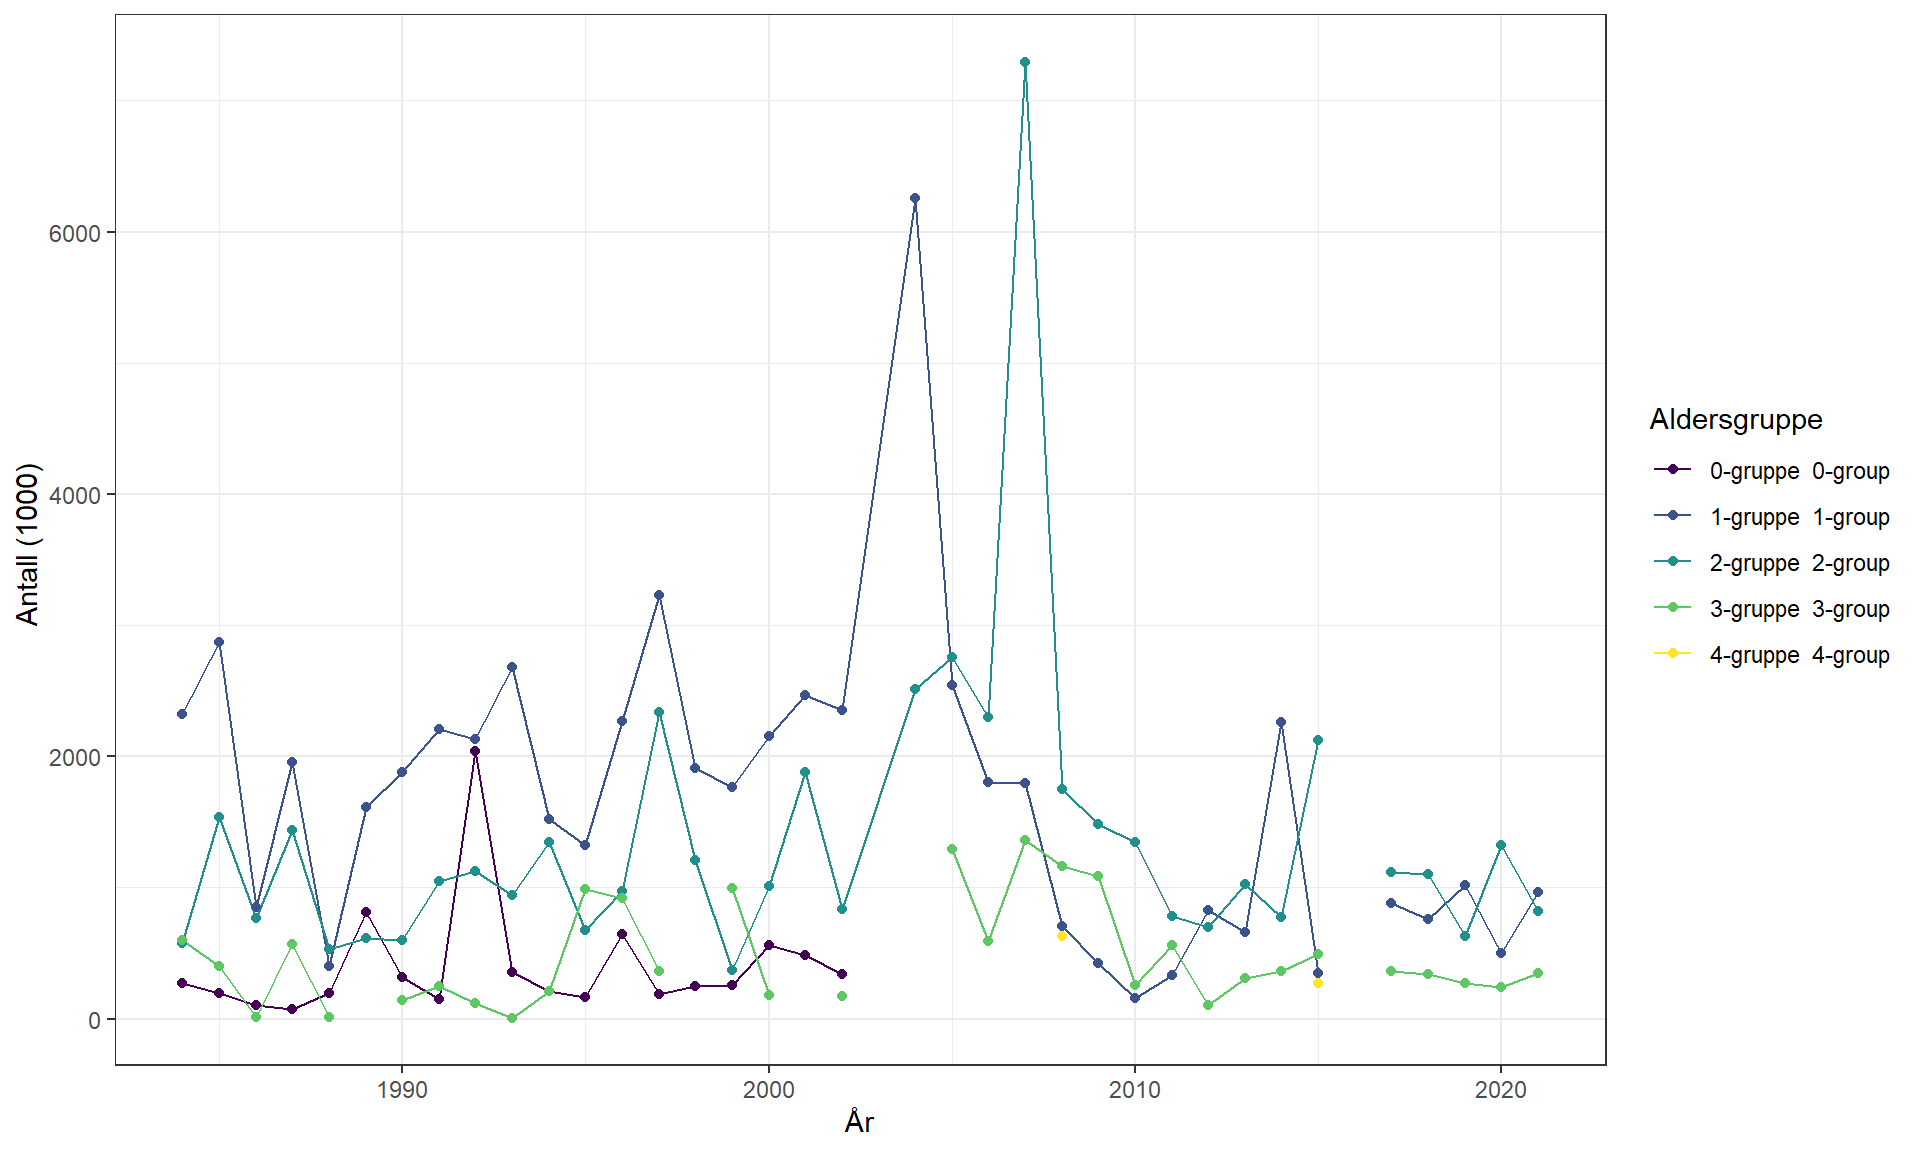 X-aksen viser år og går fra 1980 til 2021. Y-aksen viser antall (i 1000) og går fra 0 til 7500. Fargeskala for linjene (aldersgruppe) er som følger (fra øverst til nederst): 0-gruppe: fiolett, 1-gruppe: mørk blå, 2-gruppe: turkis, 3-gruppe: lys grønn; 4-gruppe: gul.